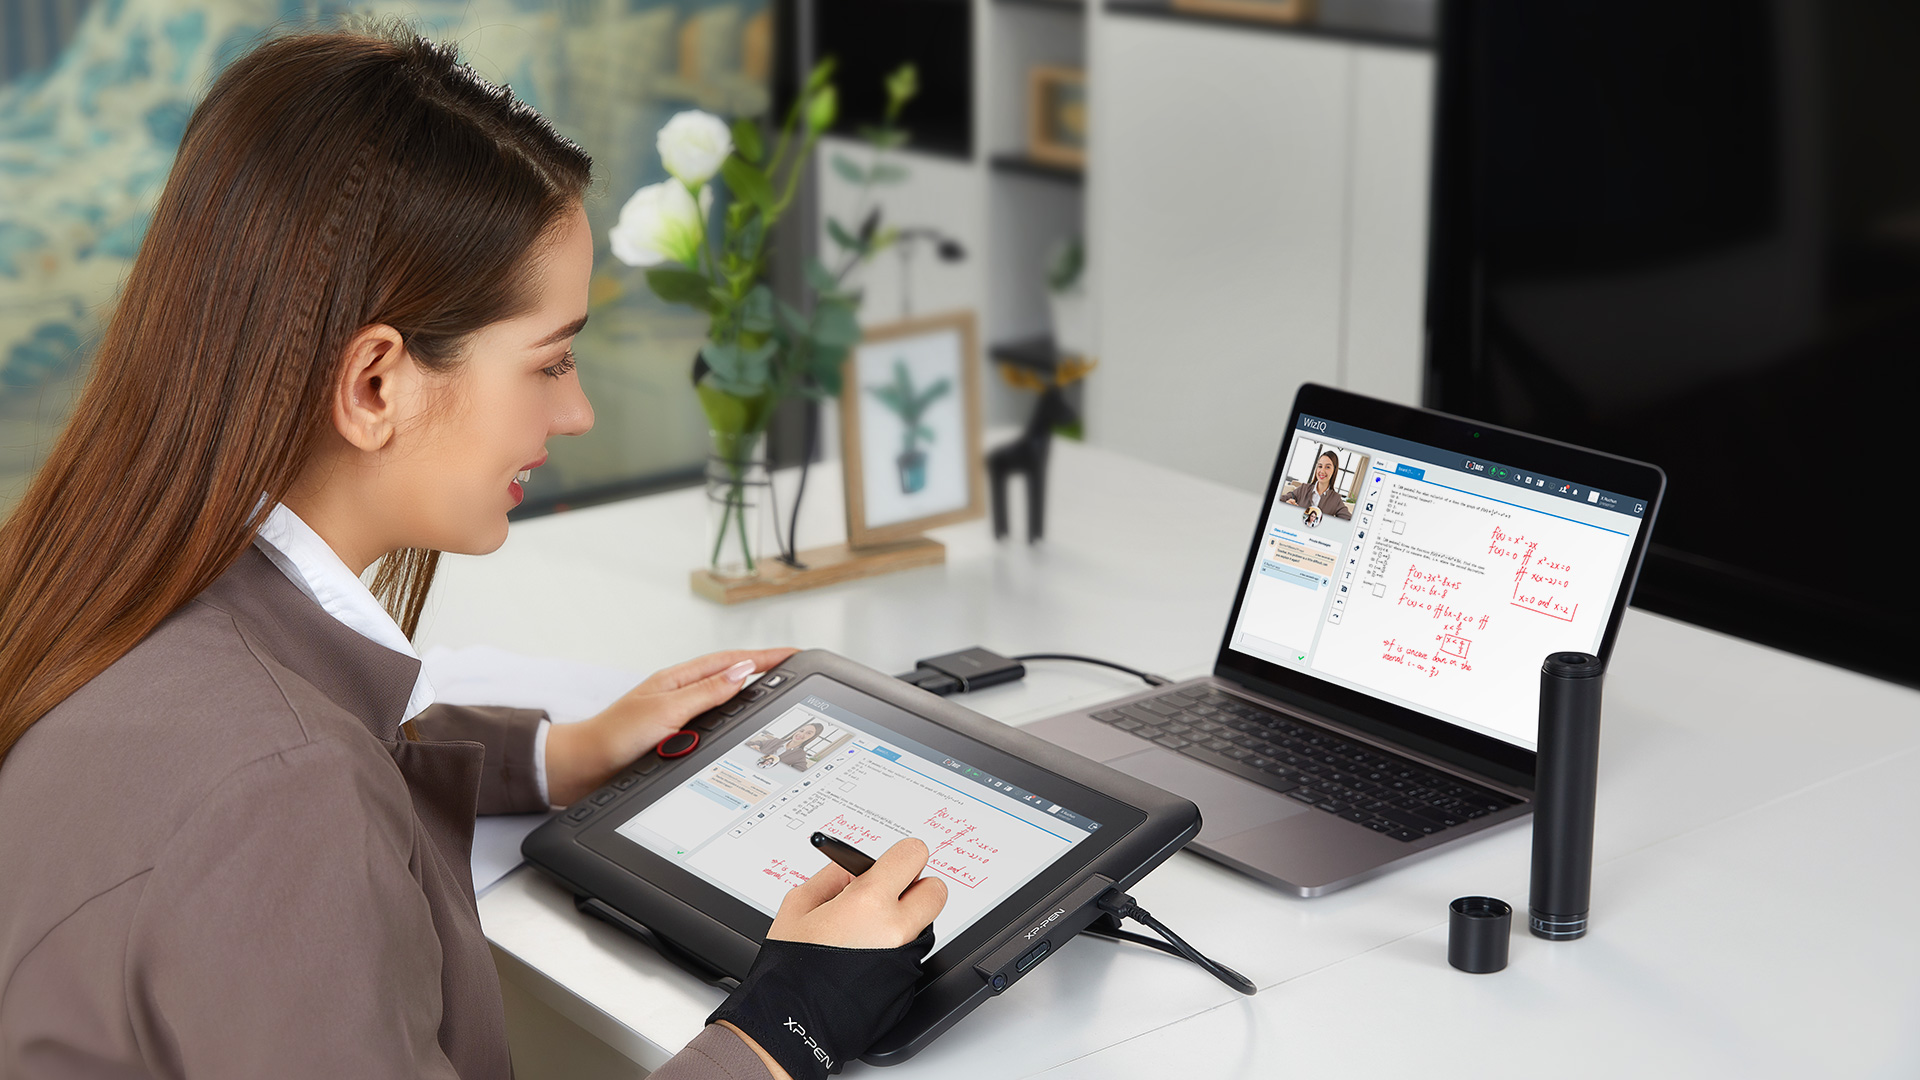 tableta digitalizadora XP-Pen Artist 12 Pro para escribiendo, editando y anotando directamente en archivos